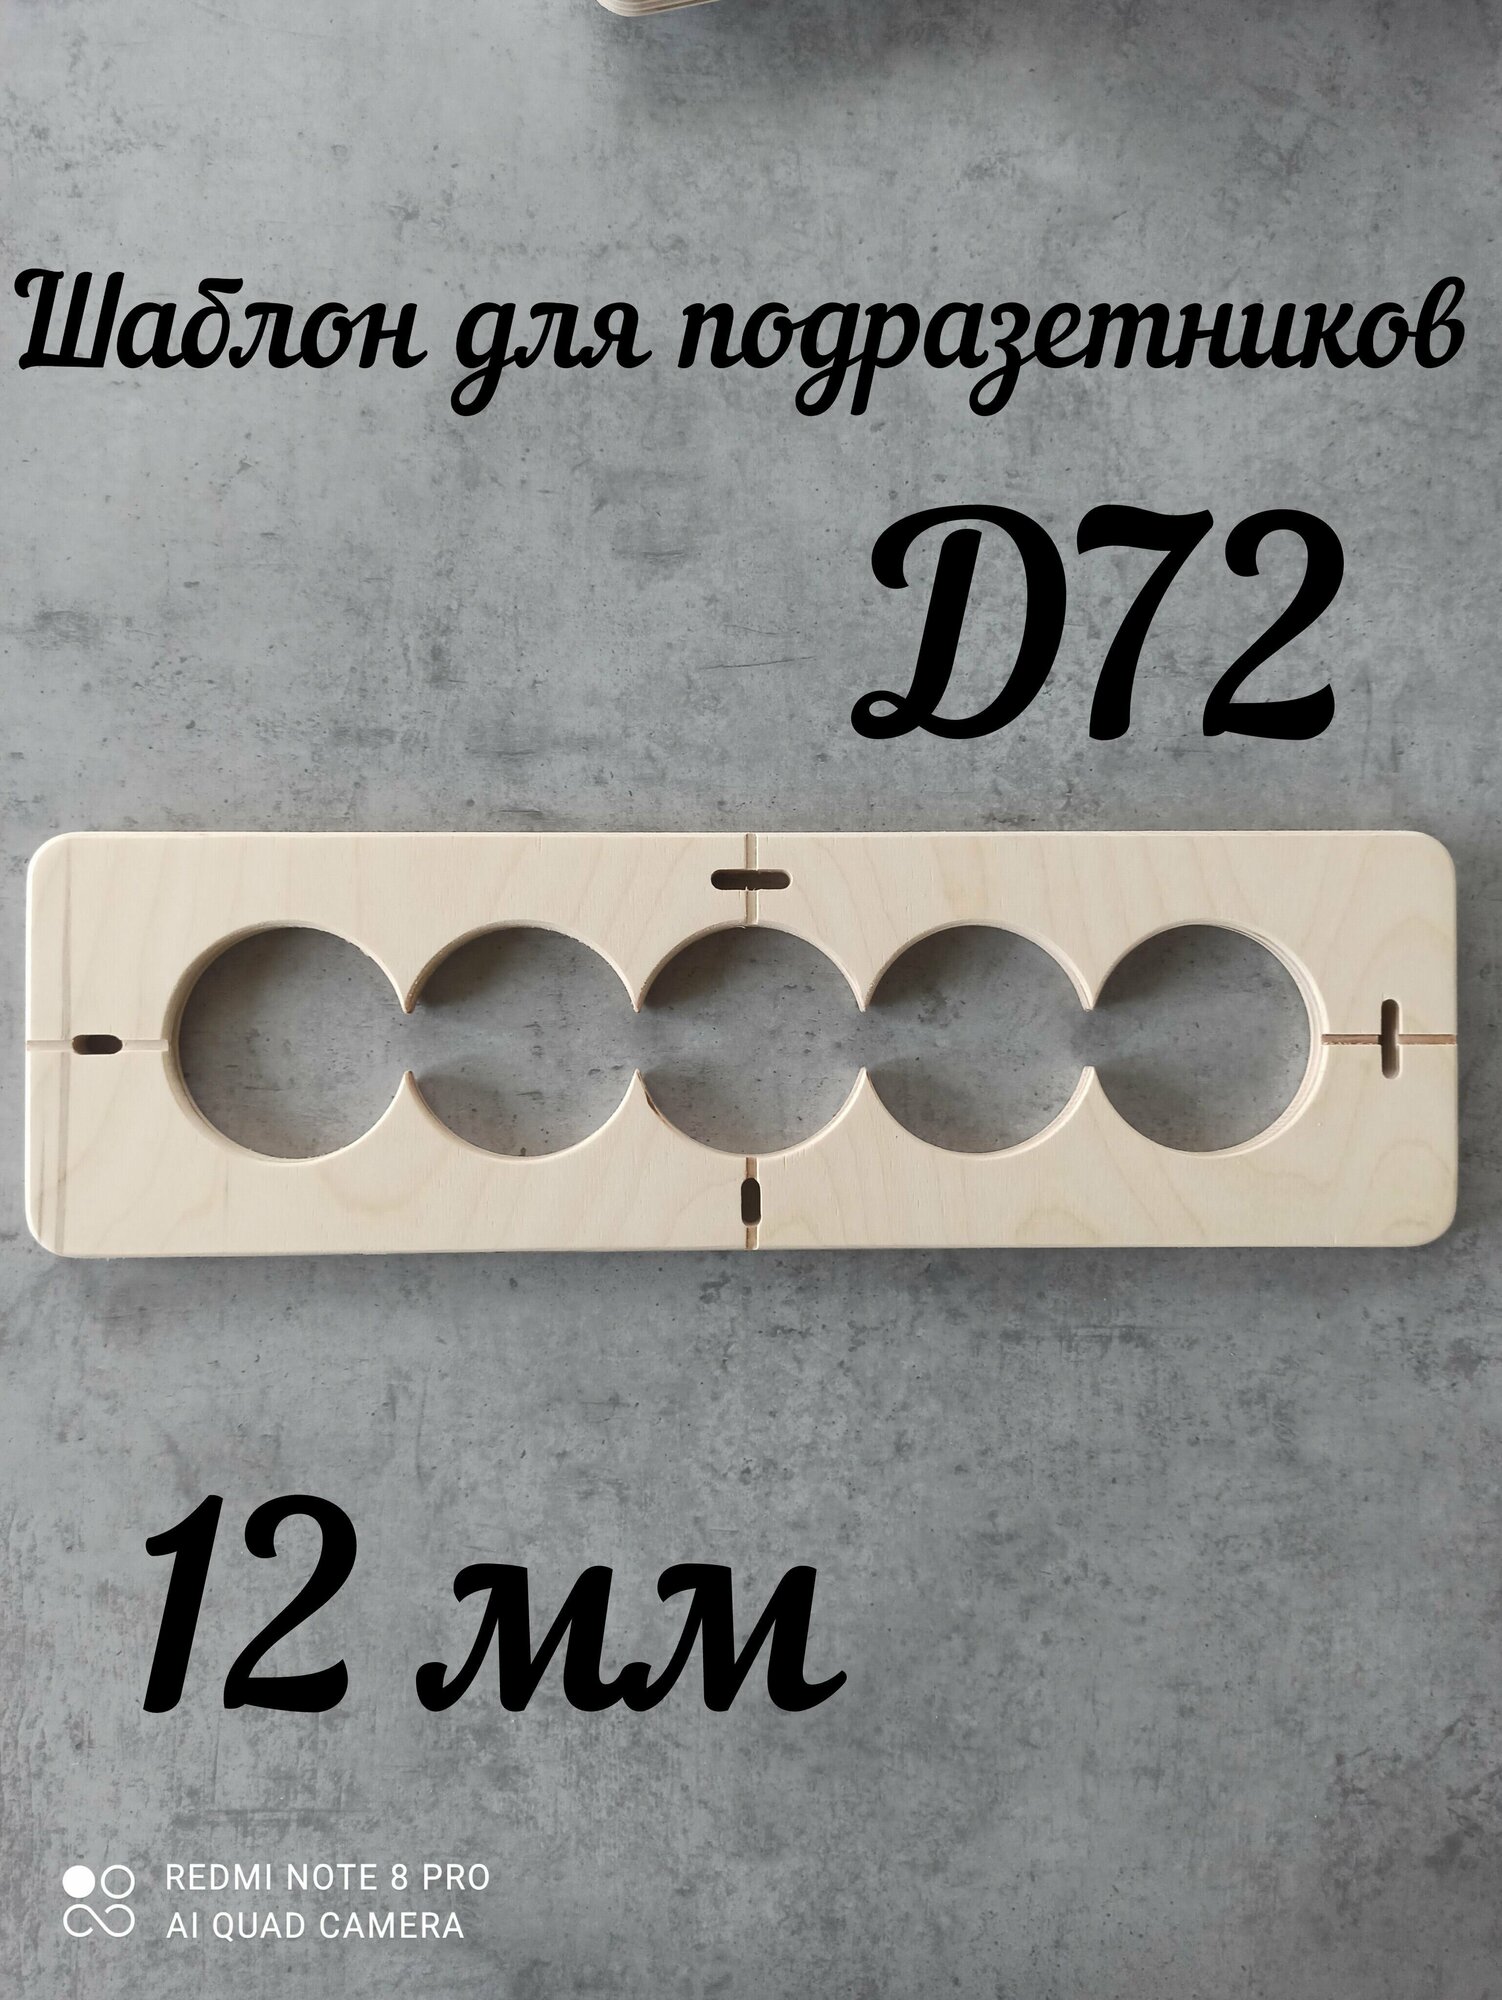 Шаблон для сверления подразетников на 5 отверстия D 72 мм